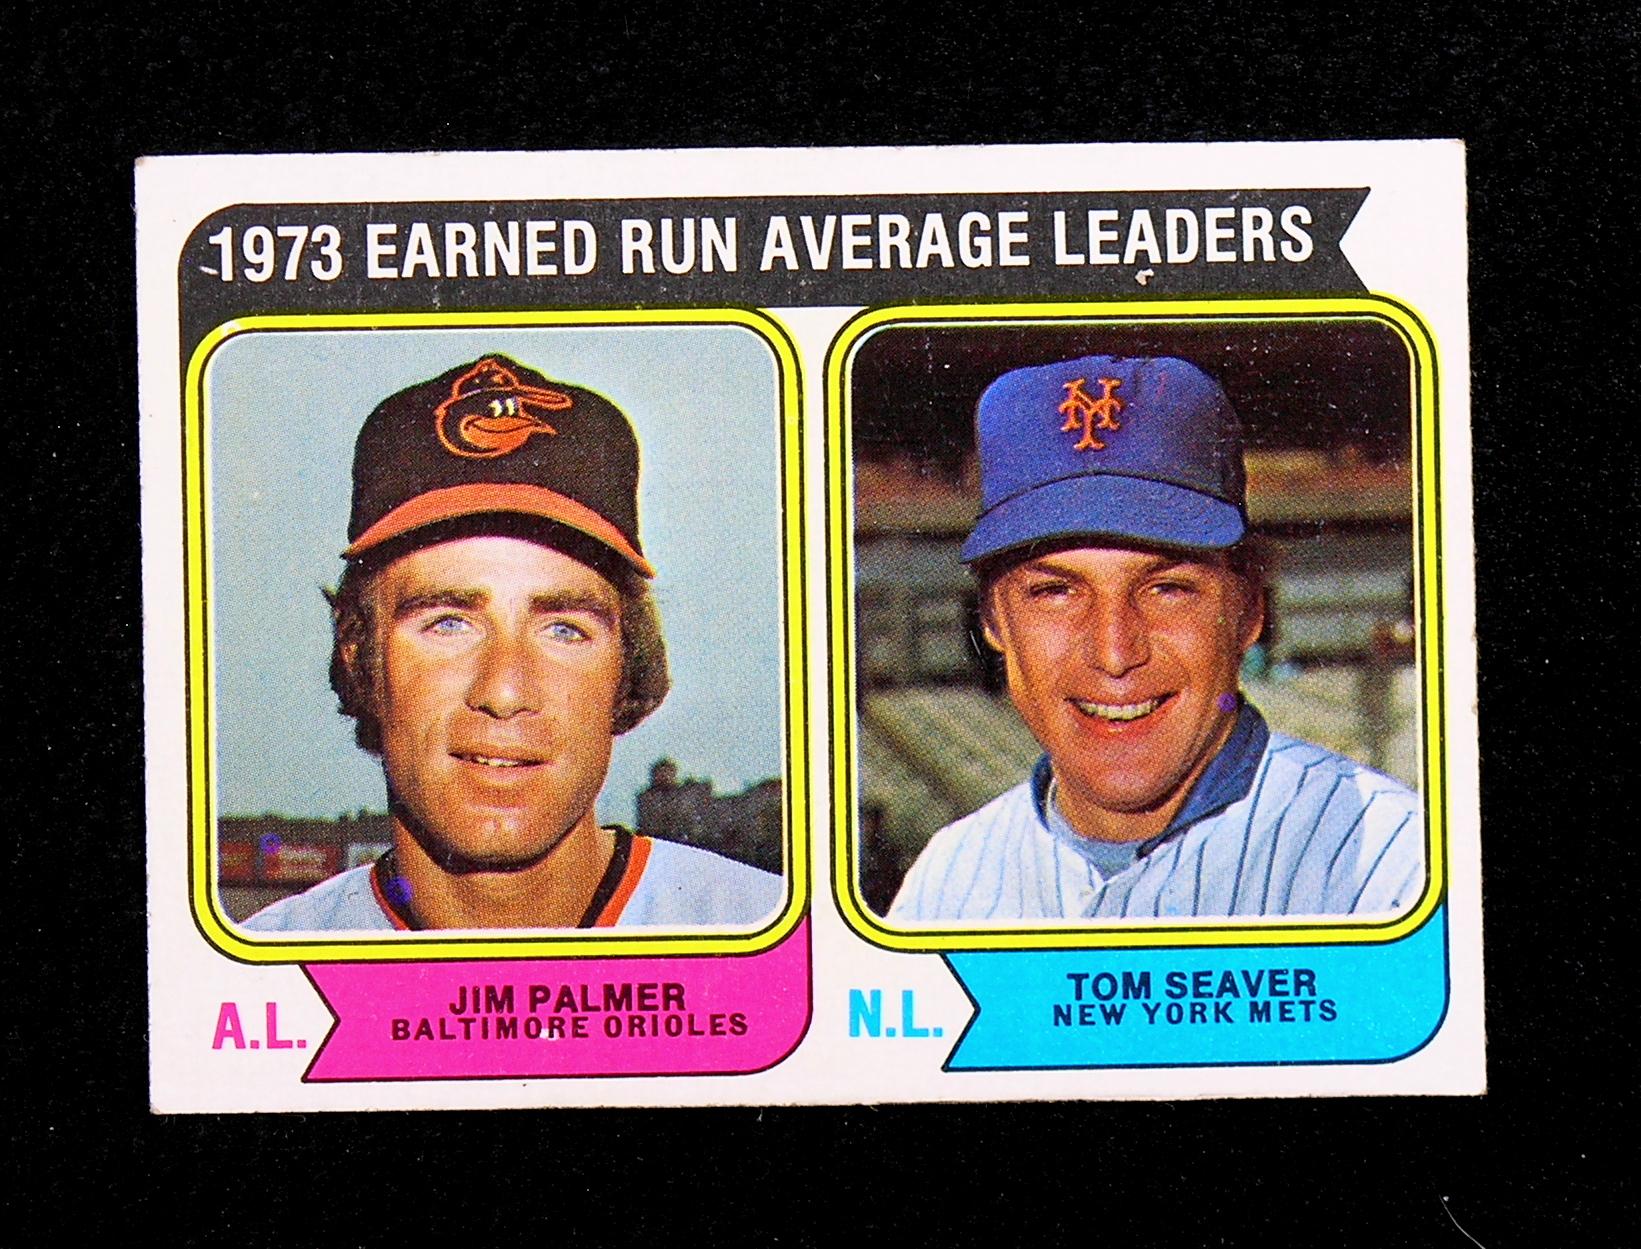 1974 Topps Baseball Card #206 1973 Earned Run Average Leaders: Jim Palmer &